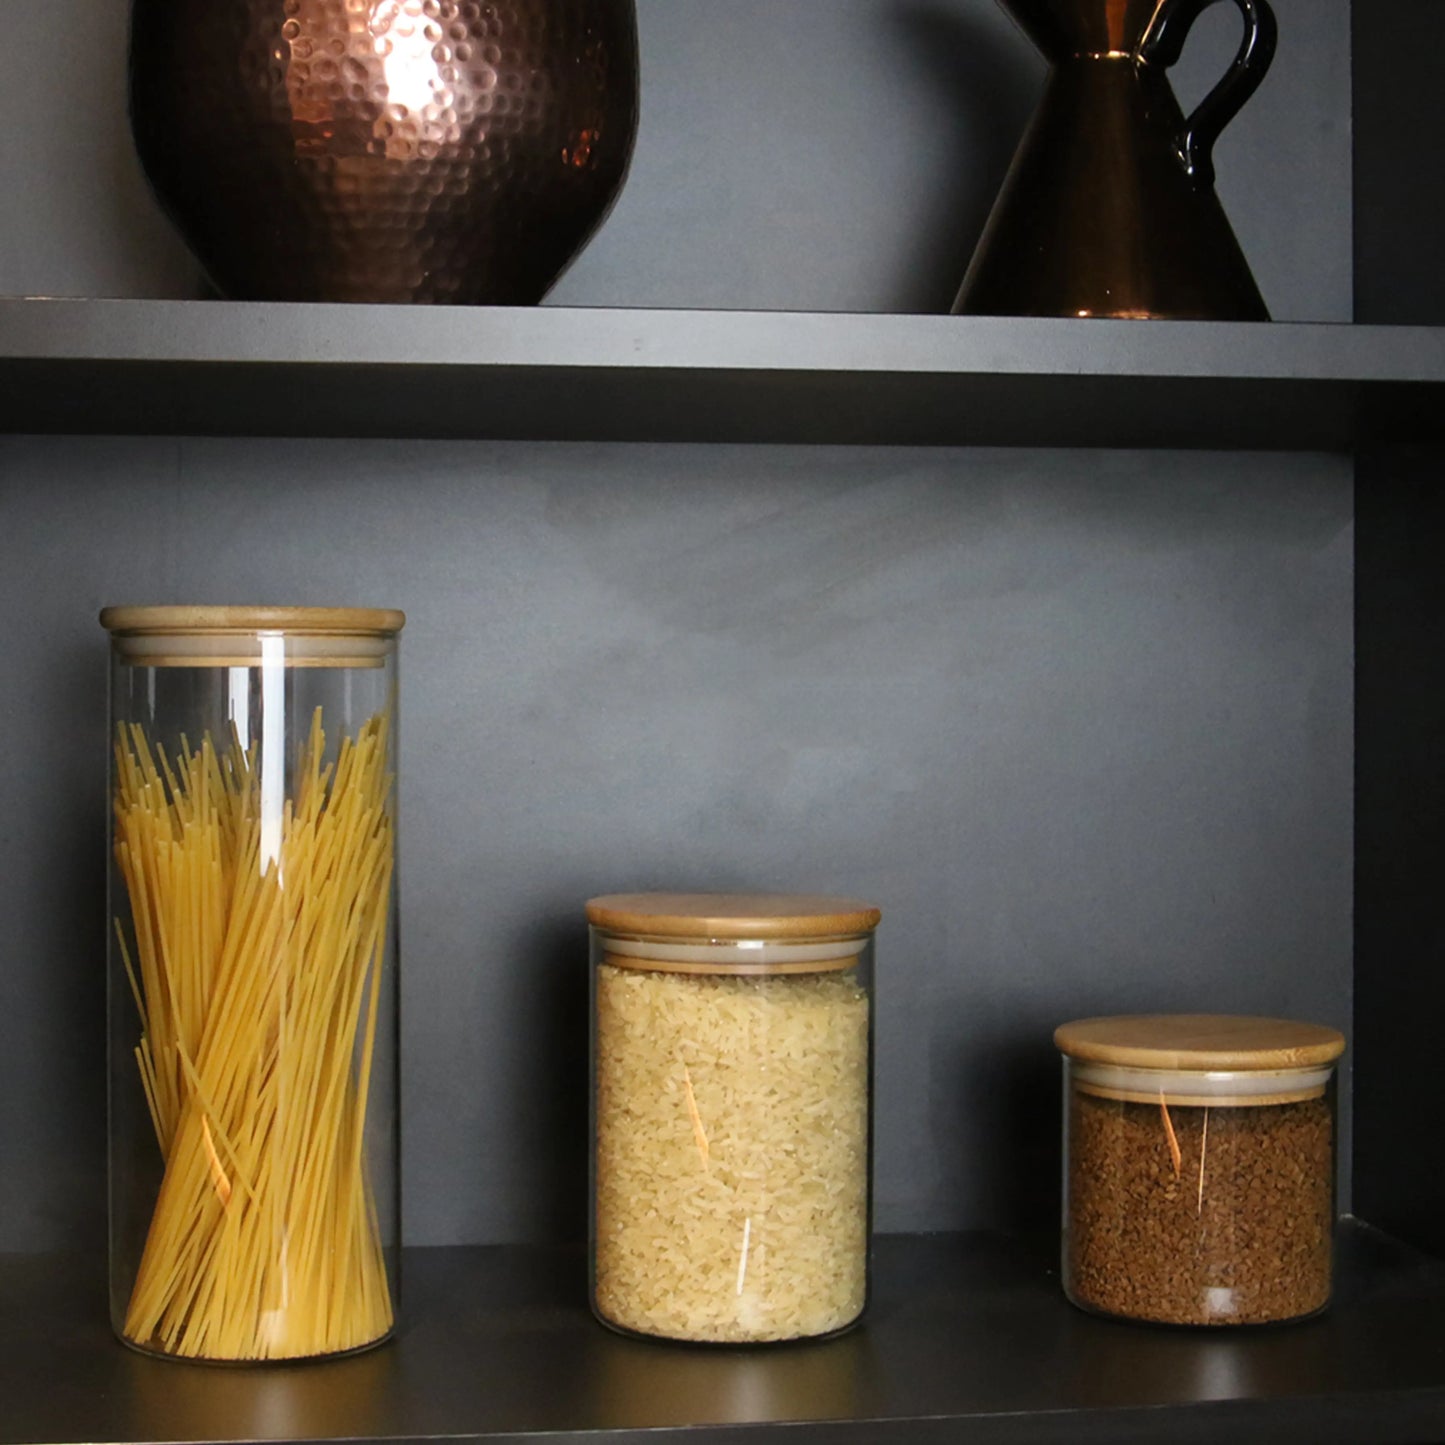 Glass Storage Jars With Bamboo Lids - M&W